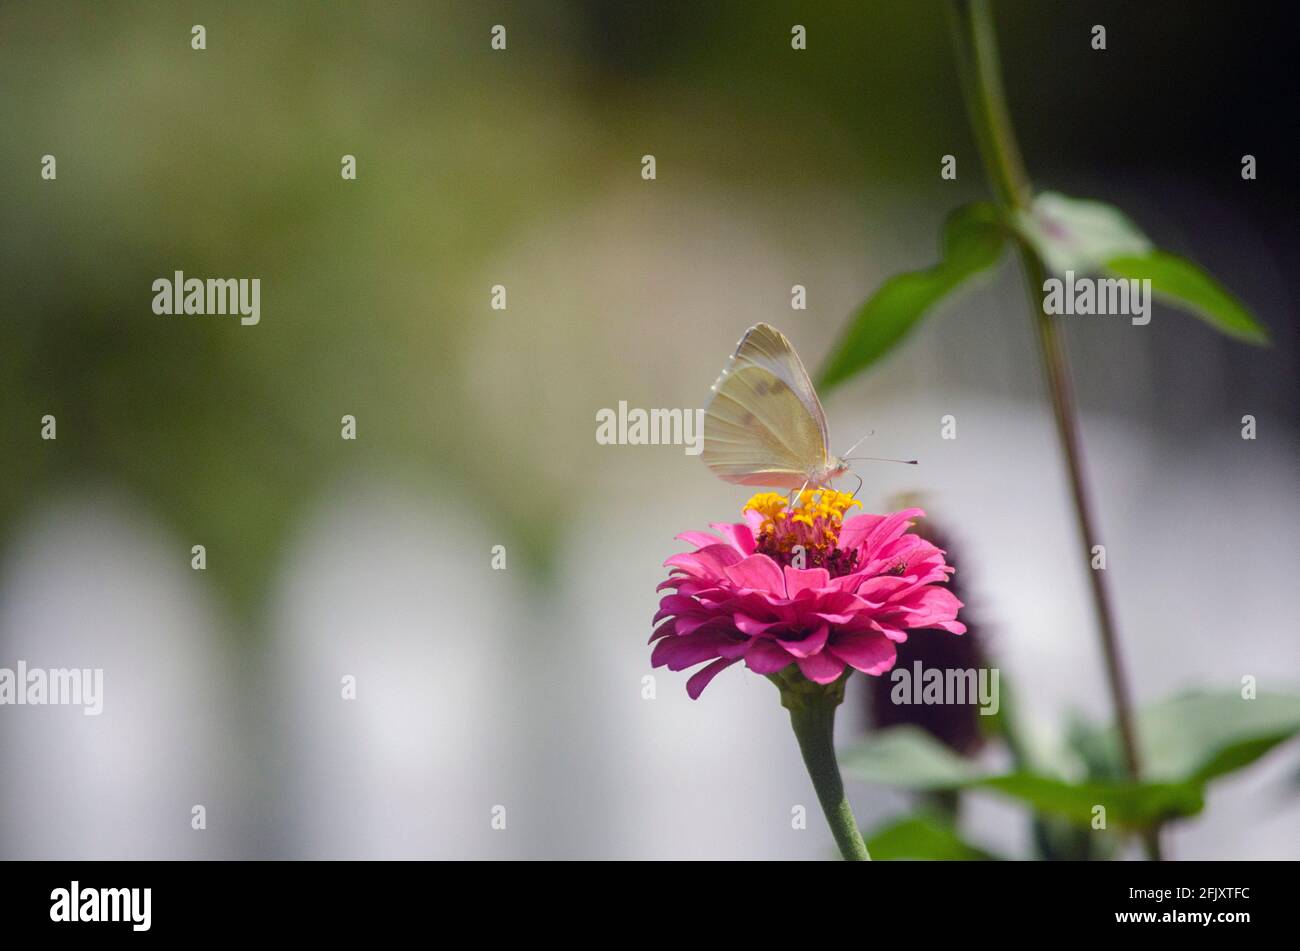 Illinois Butterflies on backyard flowers Stock Photo